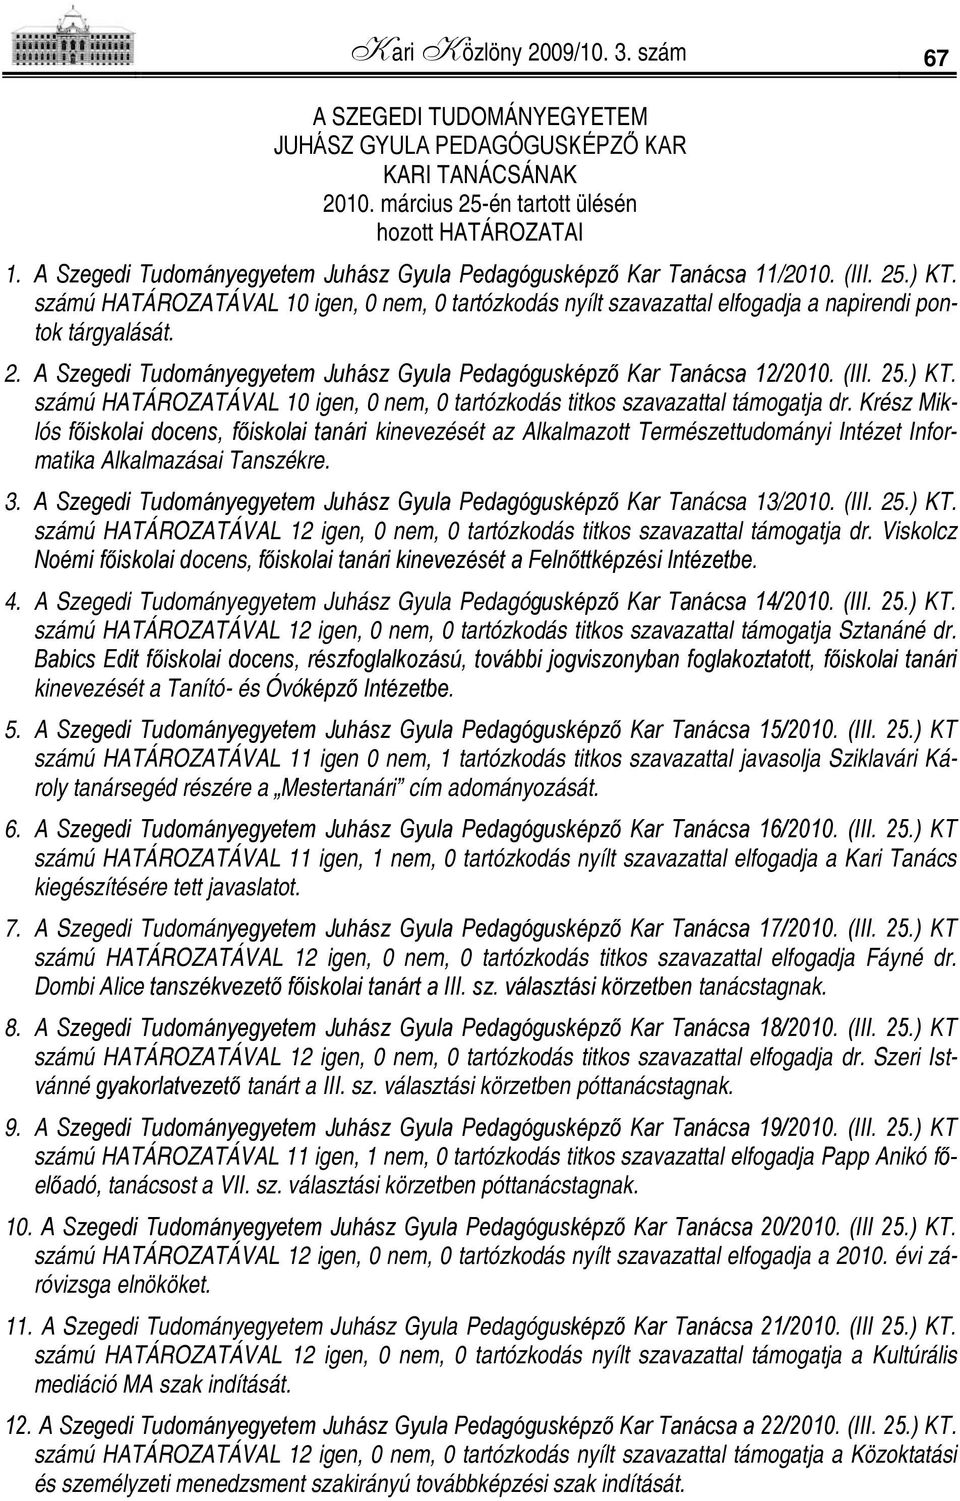 SZTE Juhász Gyula Pedagógusképző Kar hivatalos tájékoztatója. 2009/ szám.  Kari Közlöny - PDF Ingyenes letöltés